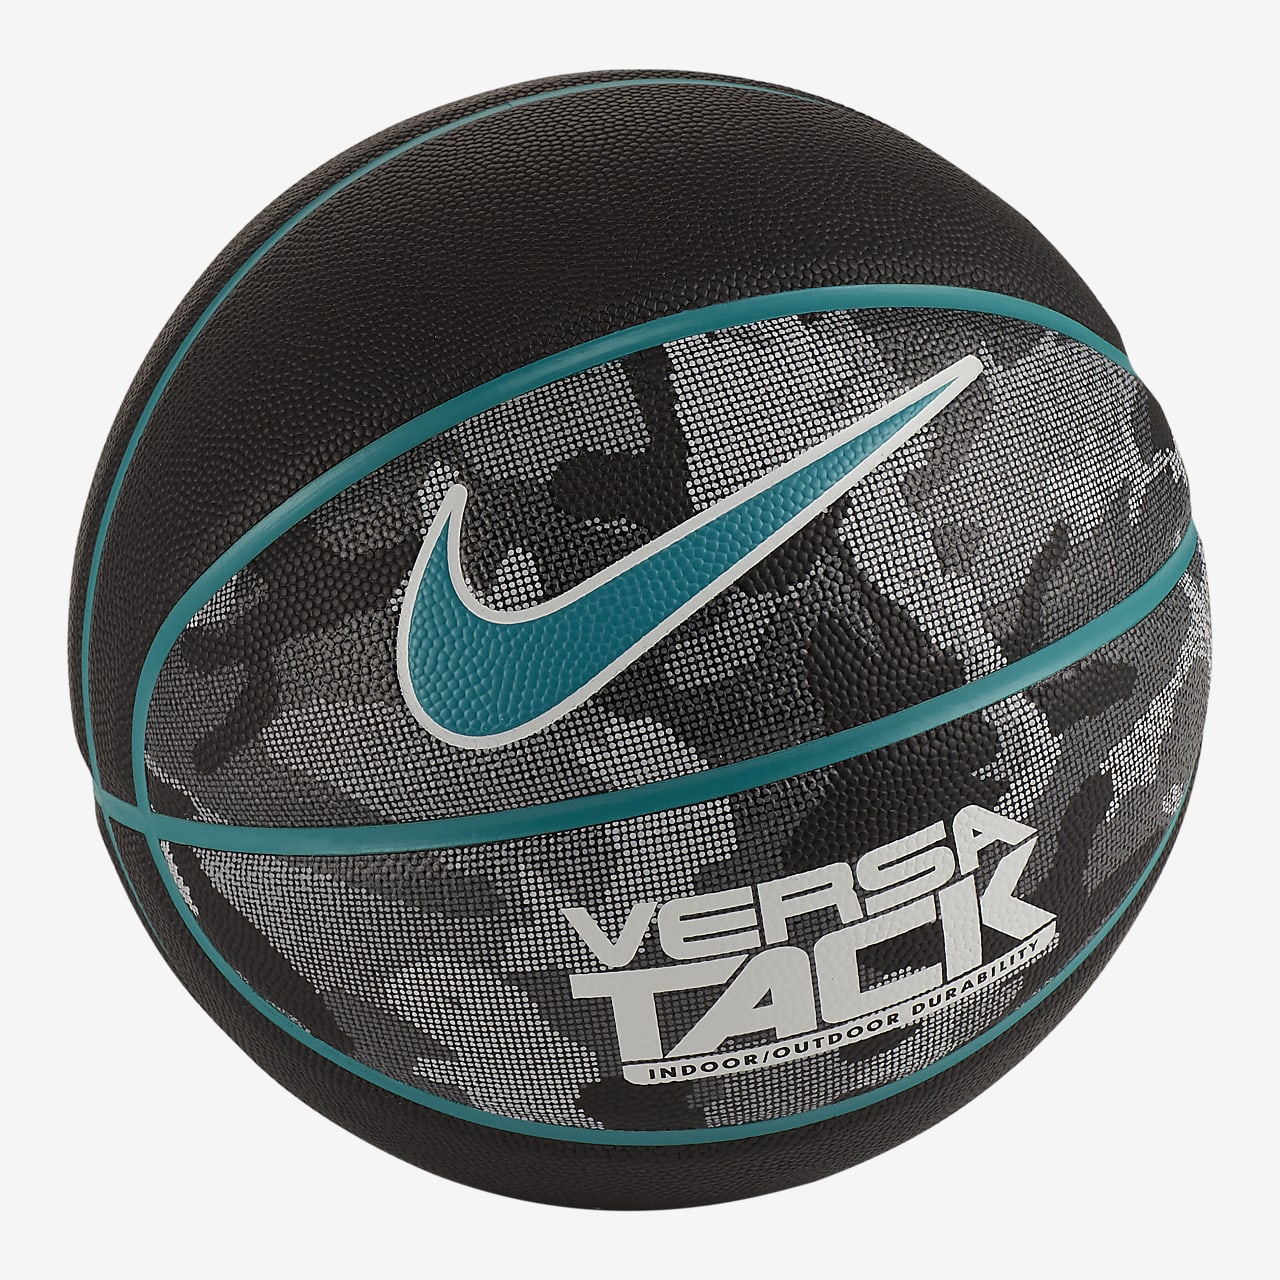 Nike Versa Tack 8P 篮球